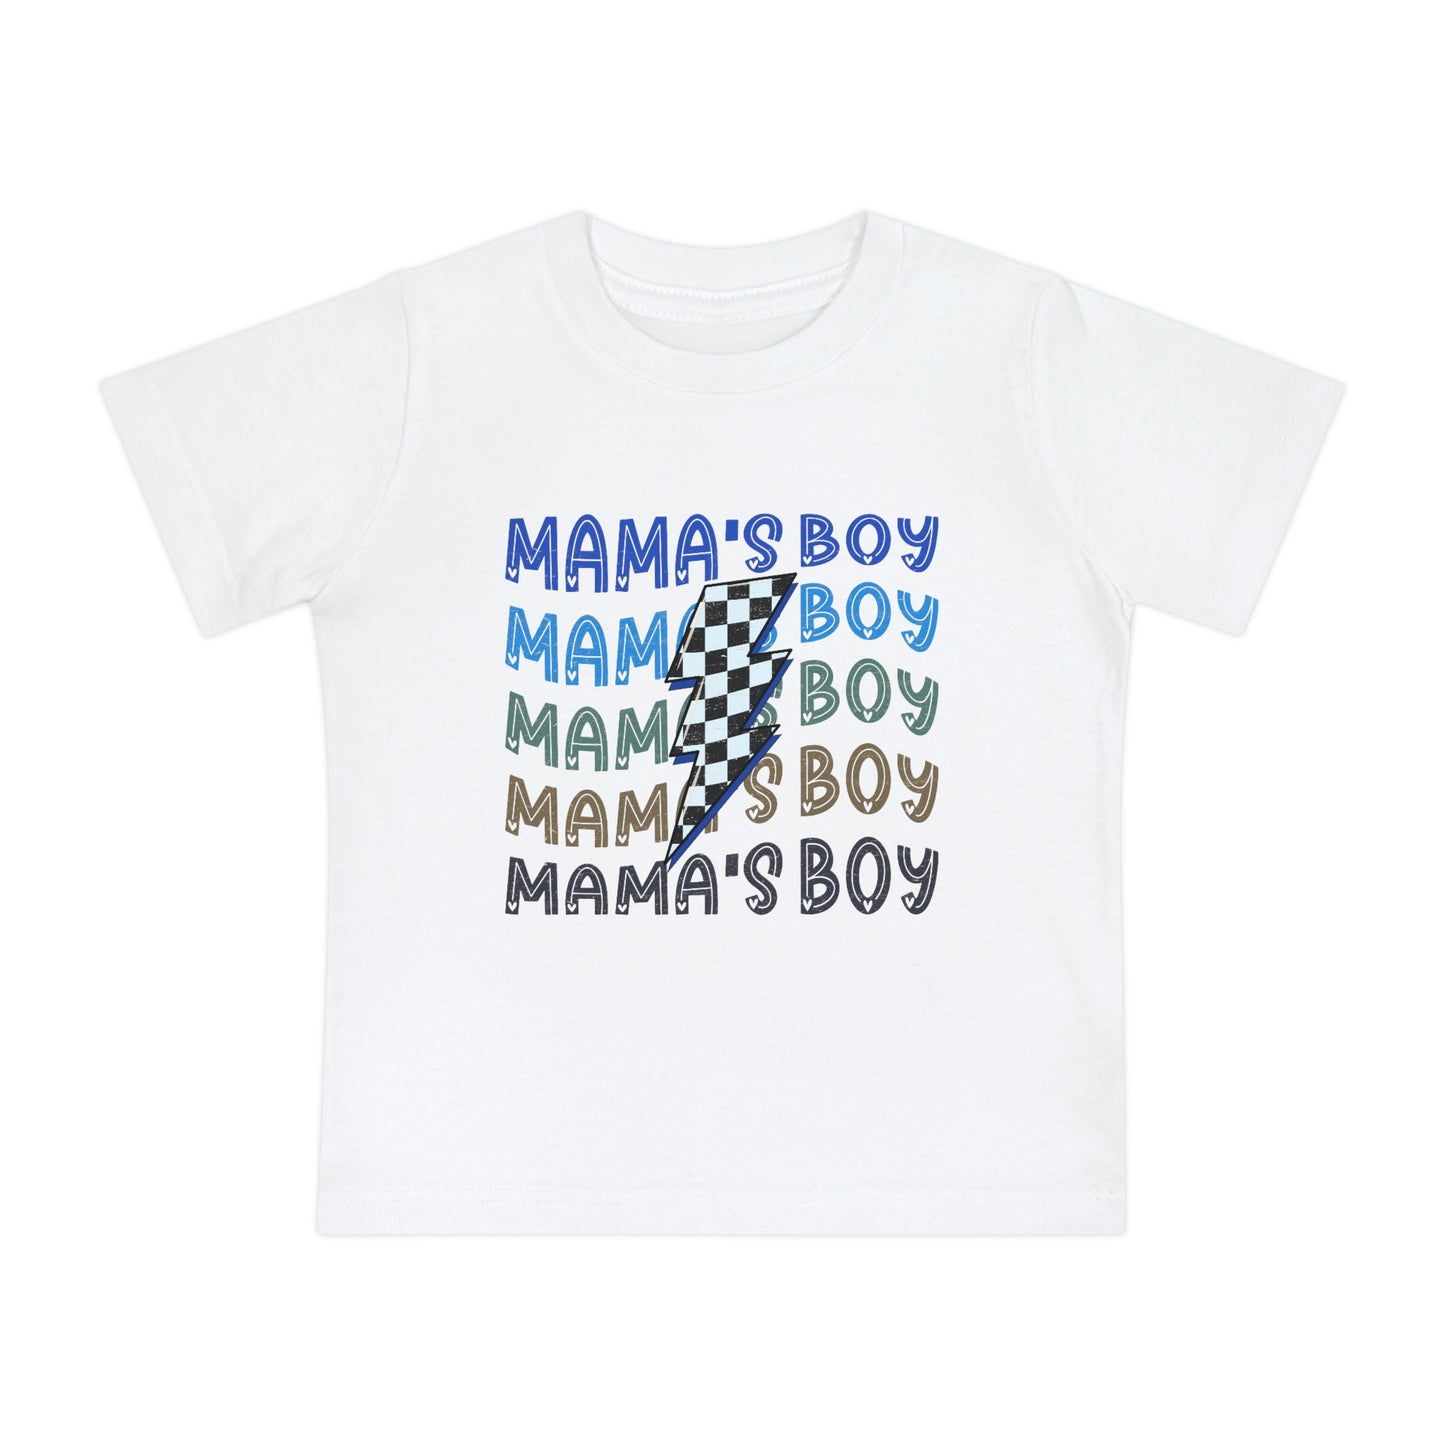 Mamas Boy T-shirt - Heart 2 Heart Boutique